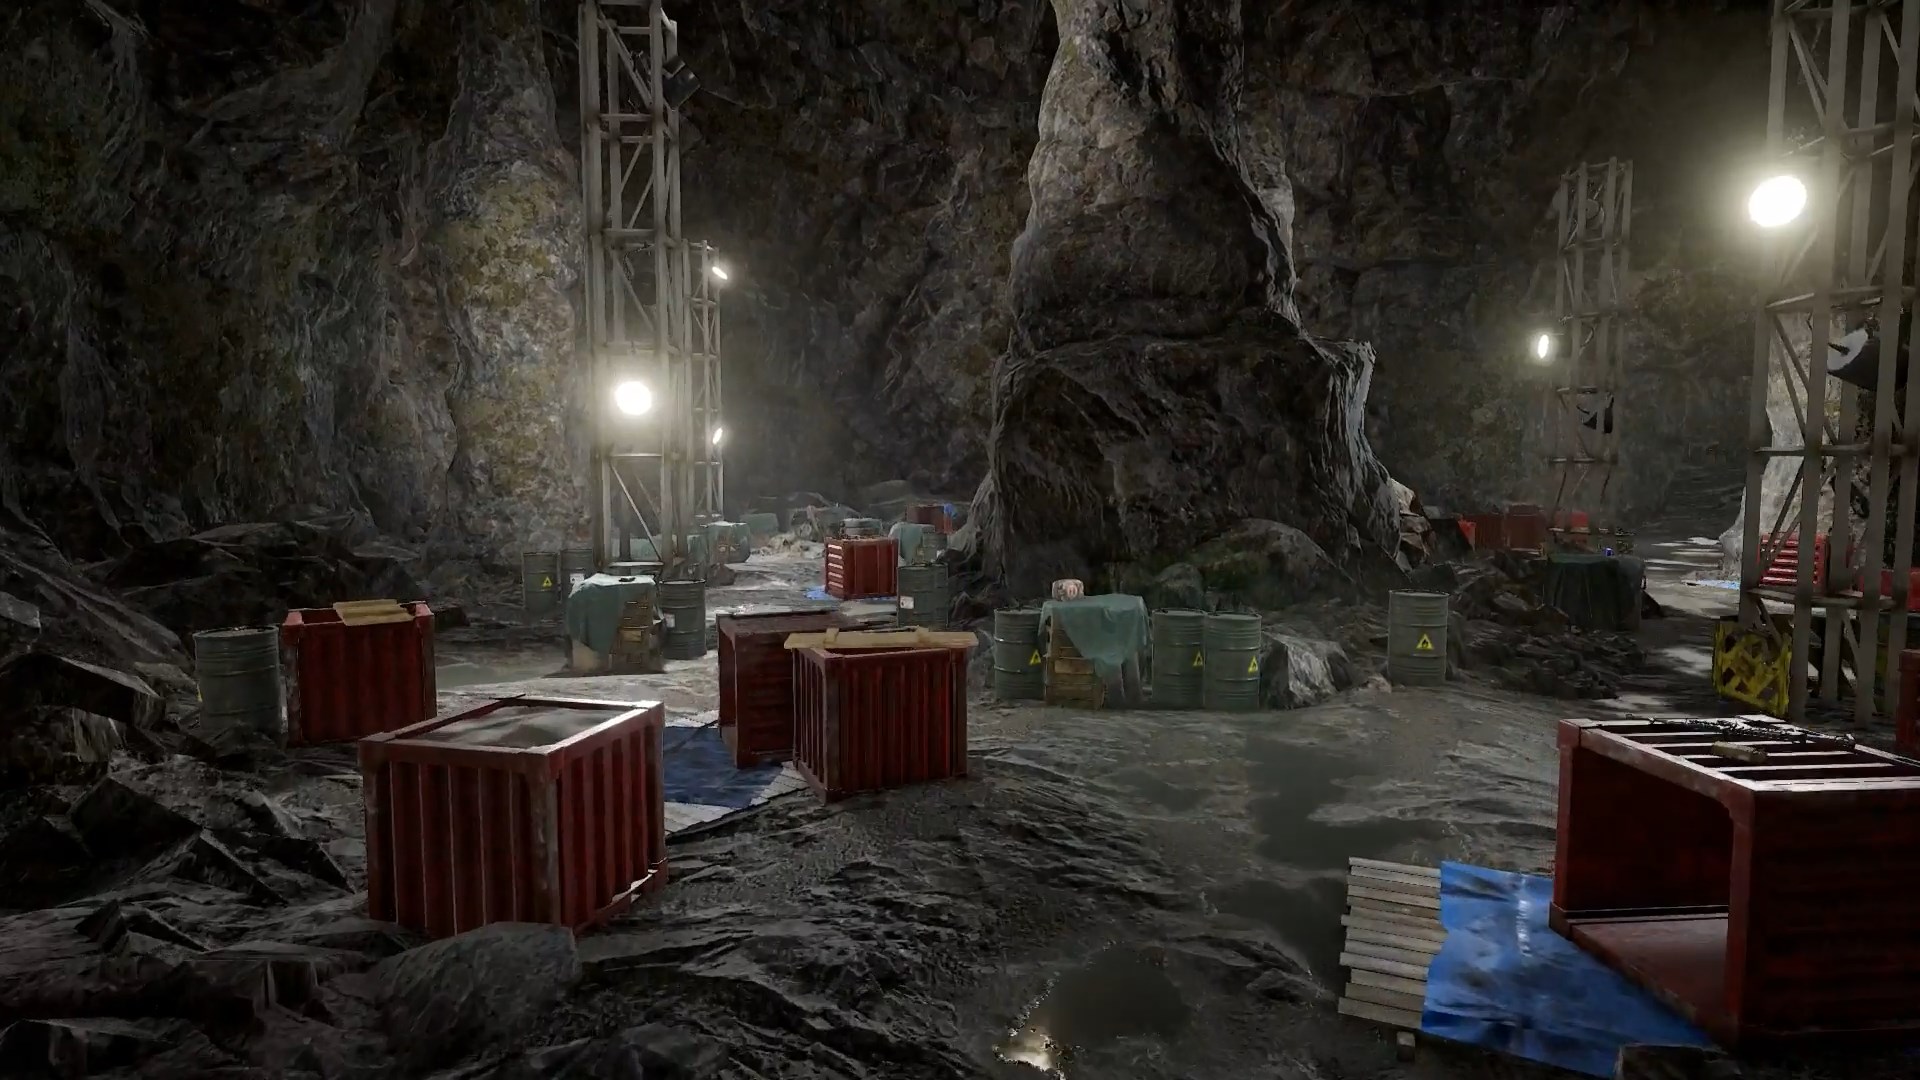 Có một hang động bí ẩn ngập tràn loot trong bản đồ Vikendi của PUBG mobile